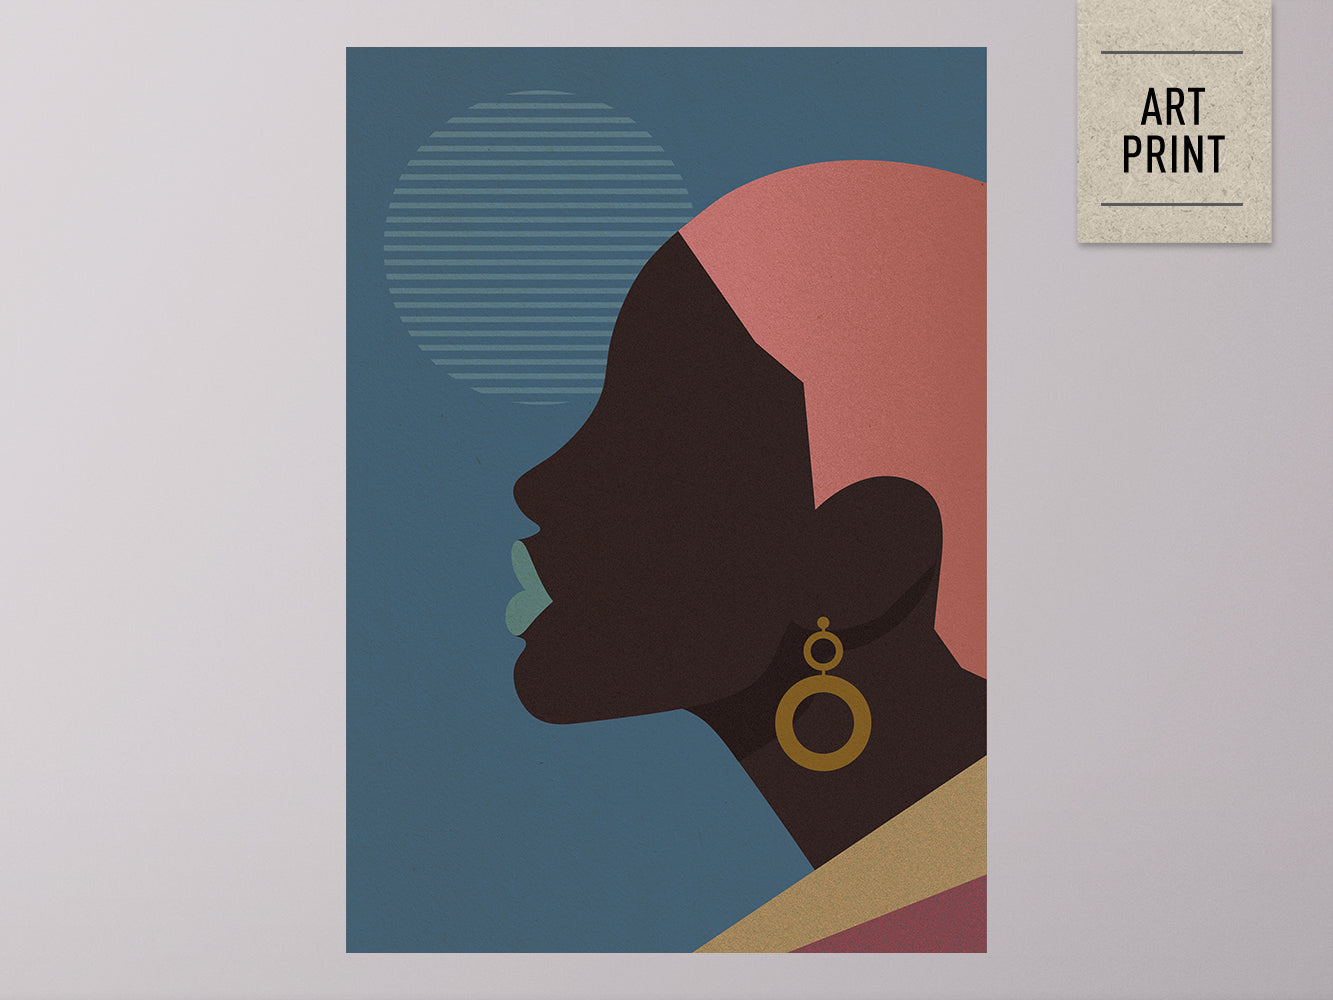 DRUCK ›Afrika Fashion 02‹ / Art Print, Ethno, Mode, Illustration, Wandbild, grafisch, minimalistisch, stylish, Trend, sinnlich, Silhouette